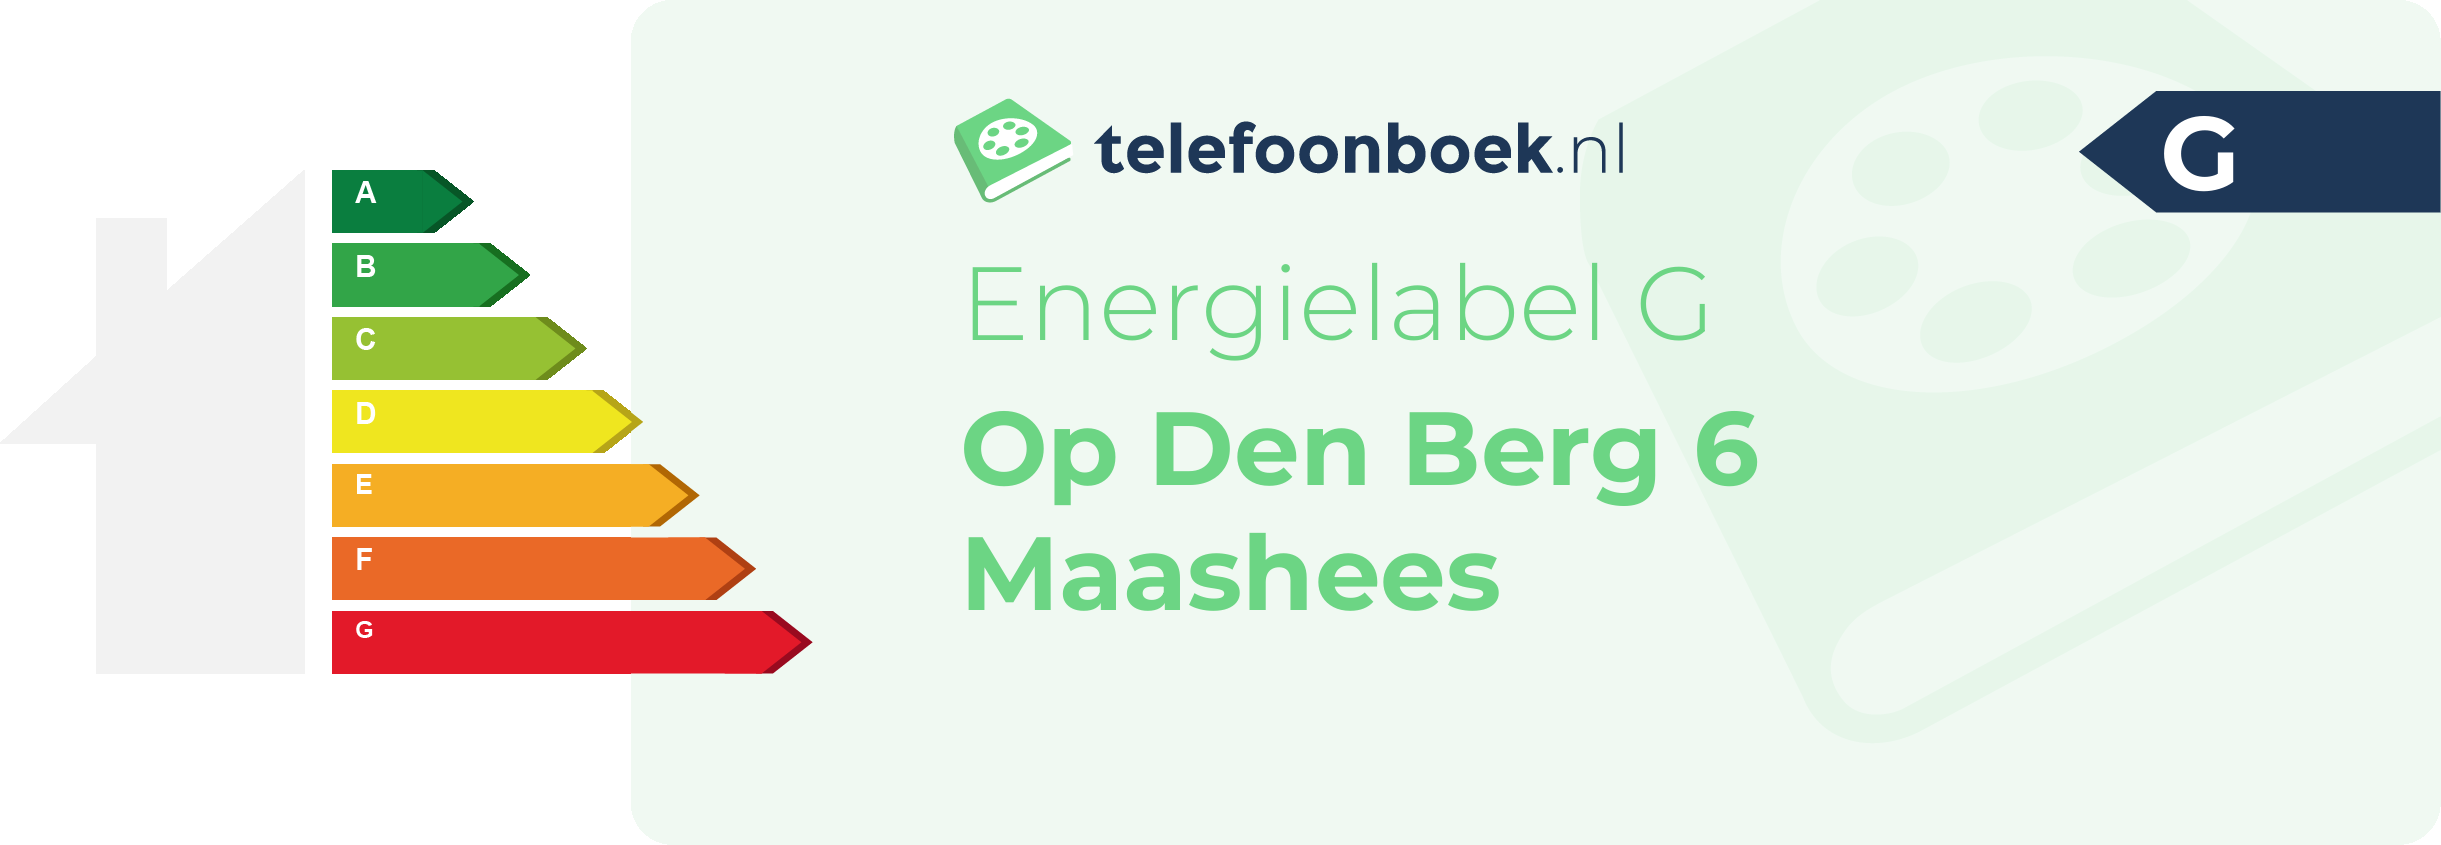 Energielabel Op Den Berg 6 Maashees